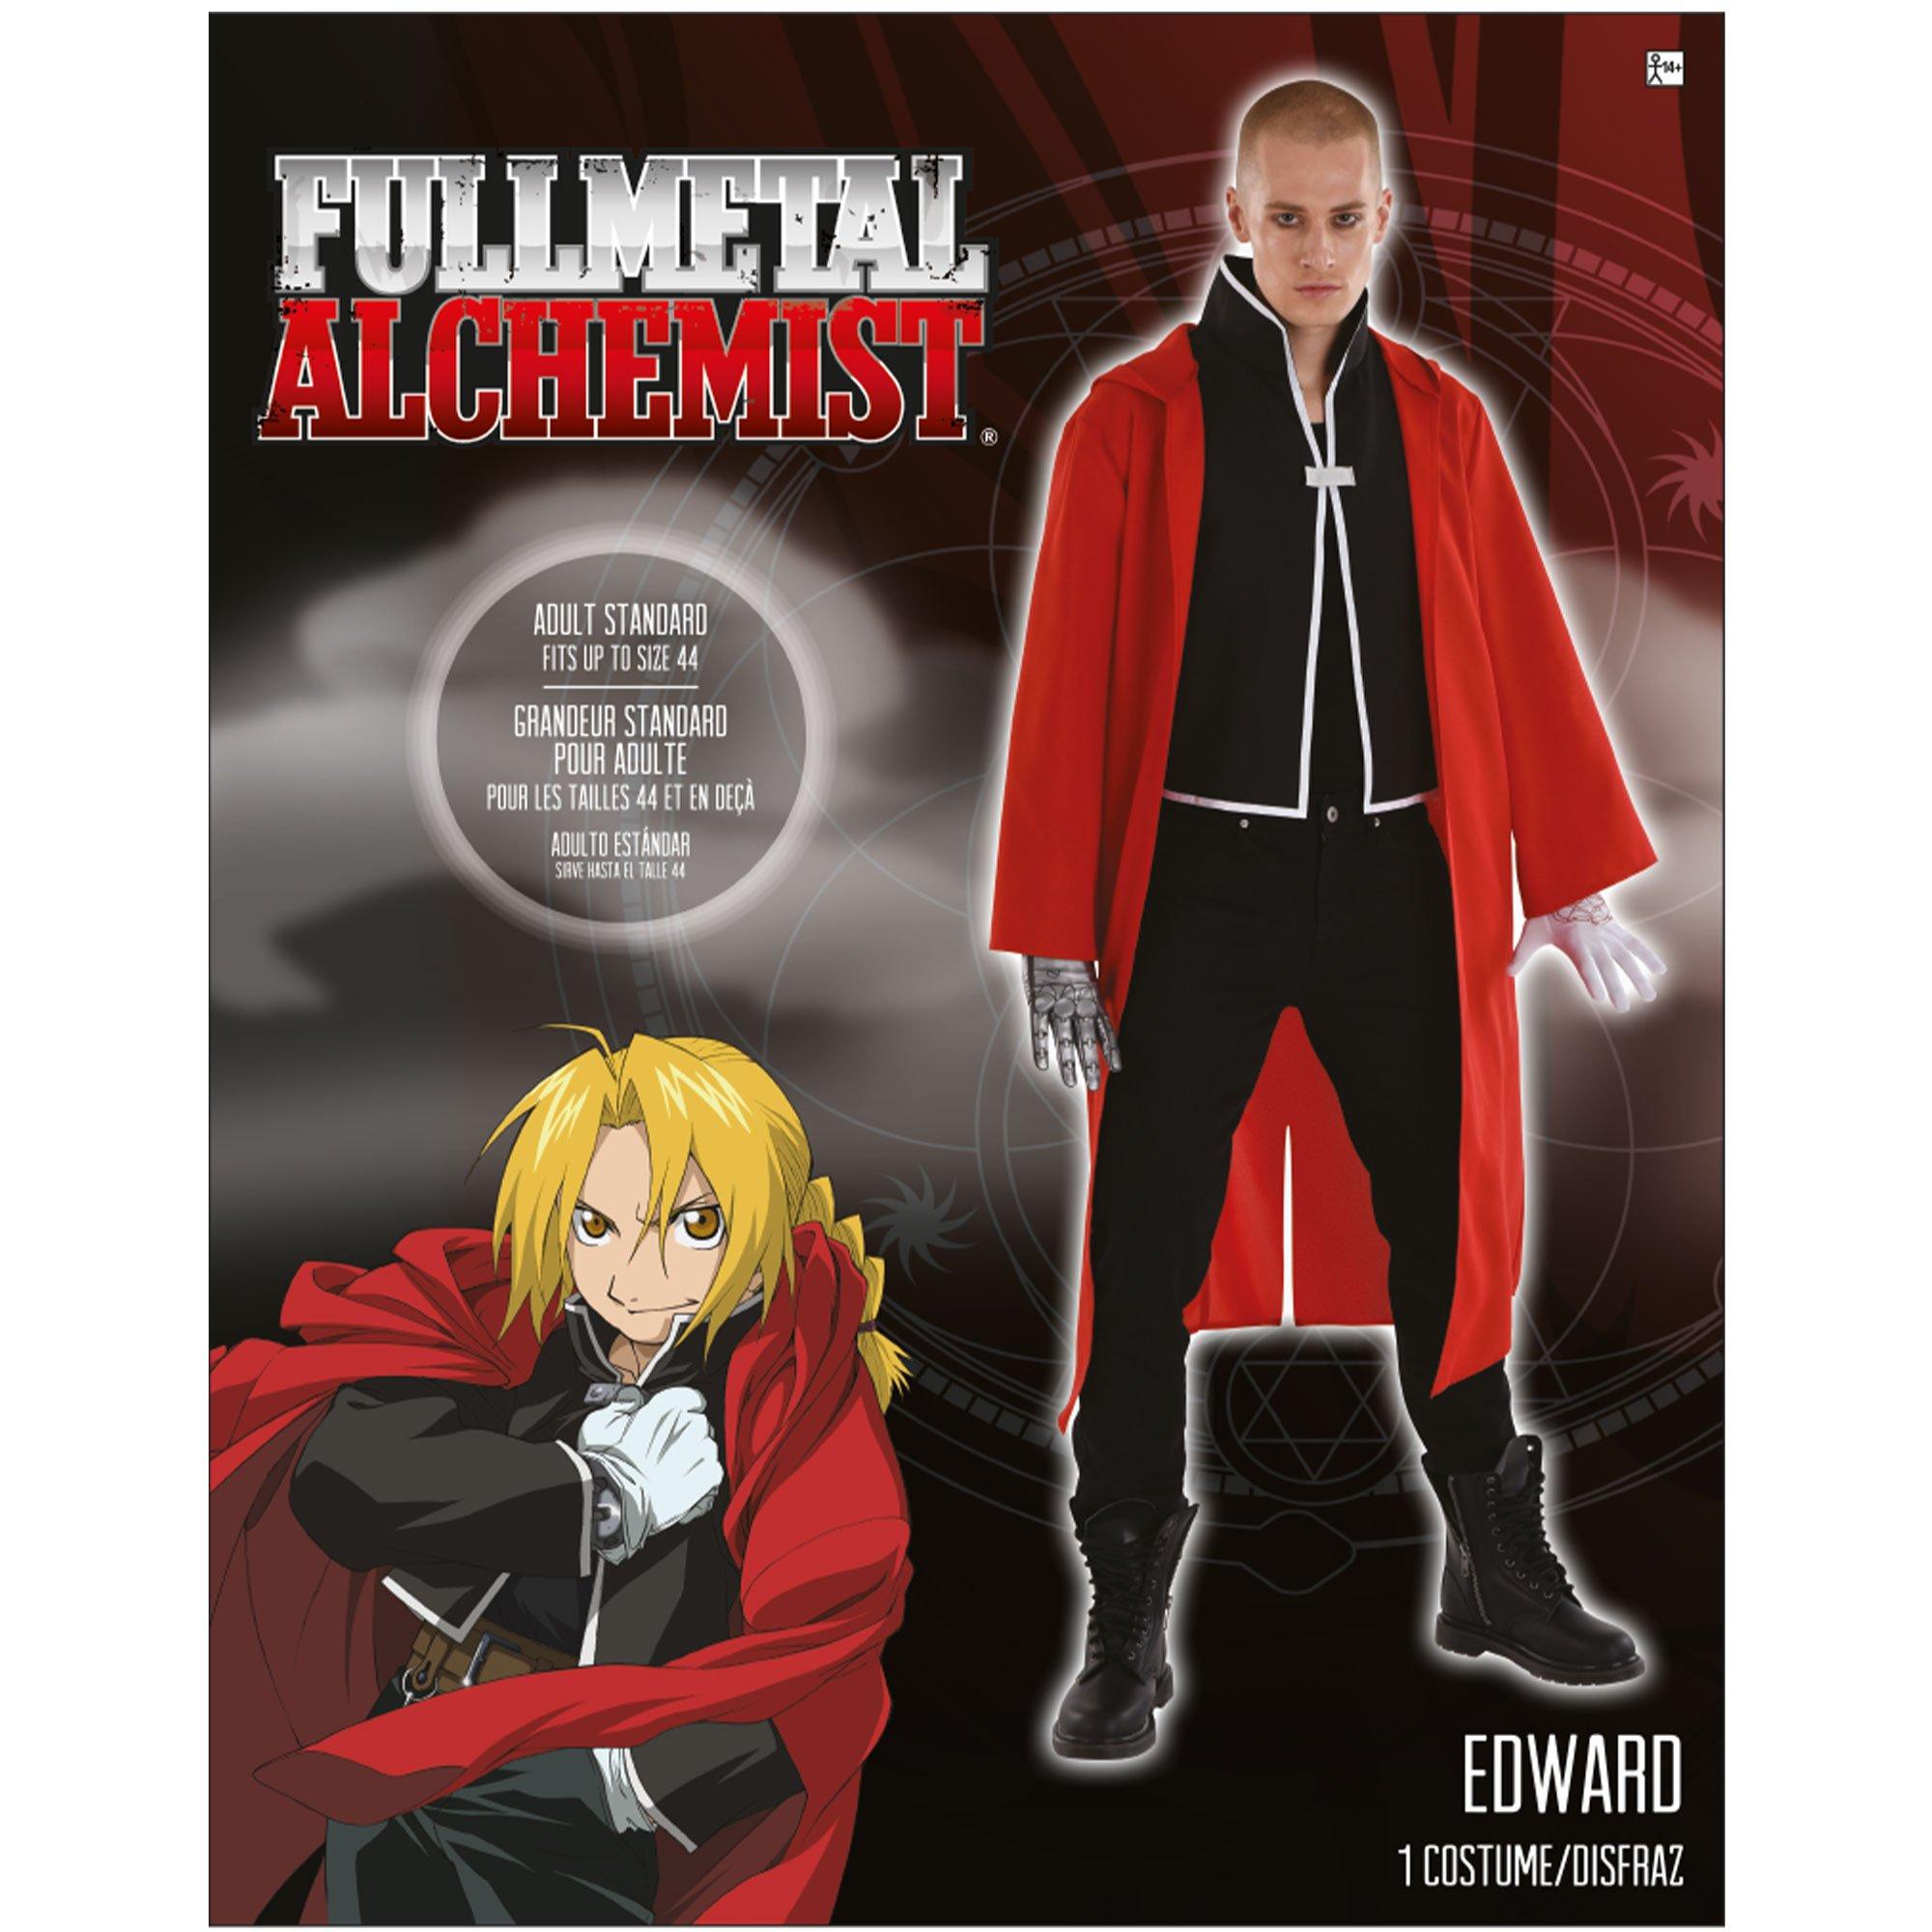 Adult Edward Costume - Full Metal Alchemist